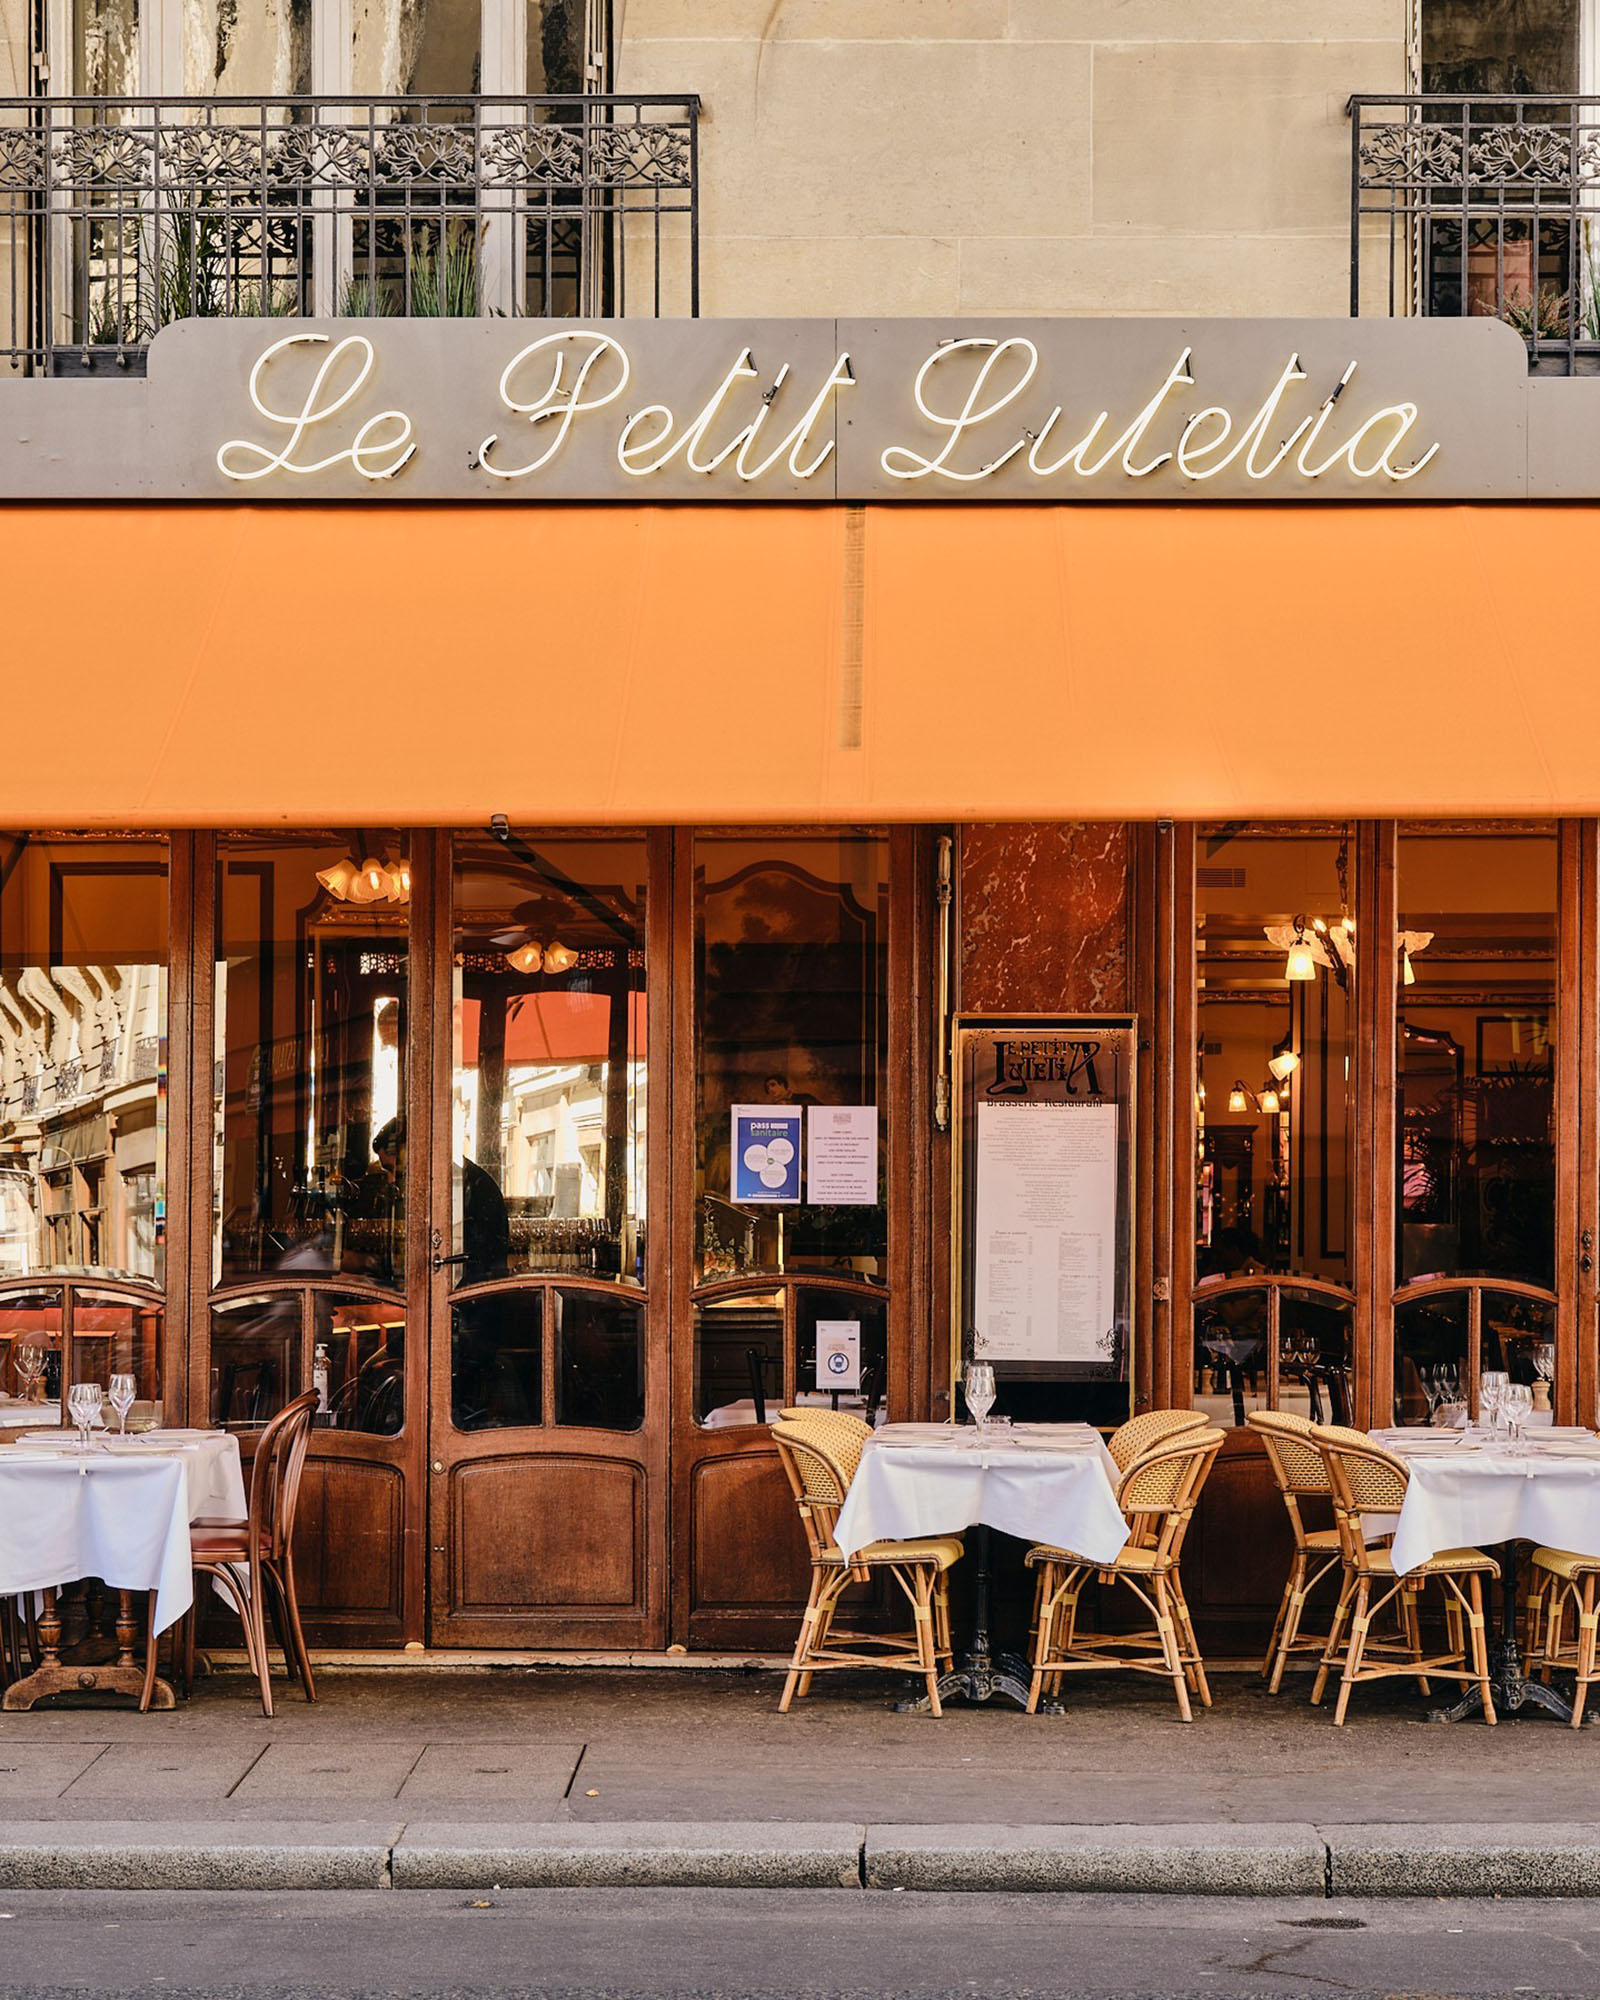 Le Petit Lutetia’s storefront in Paris.